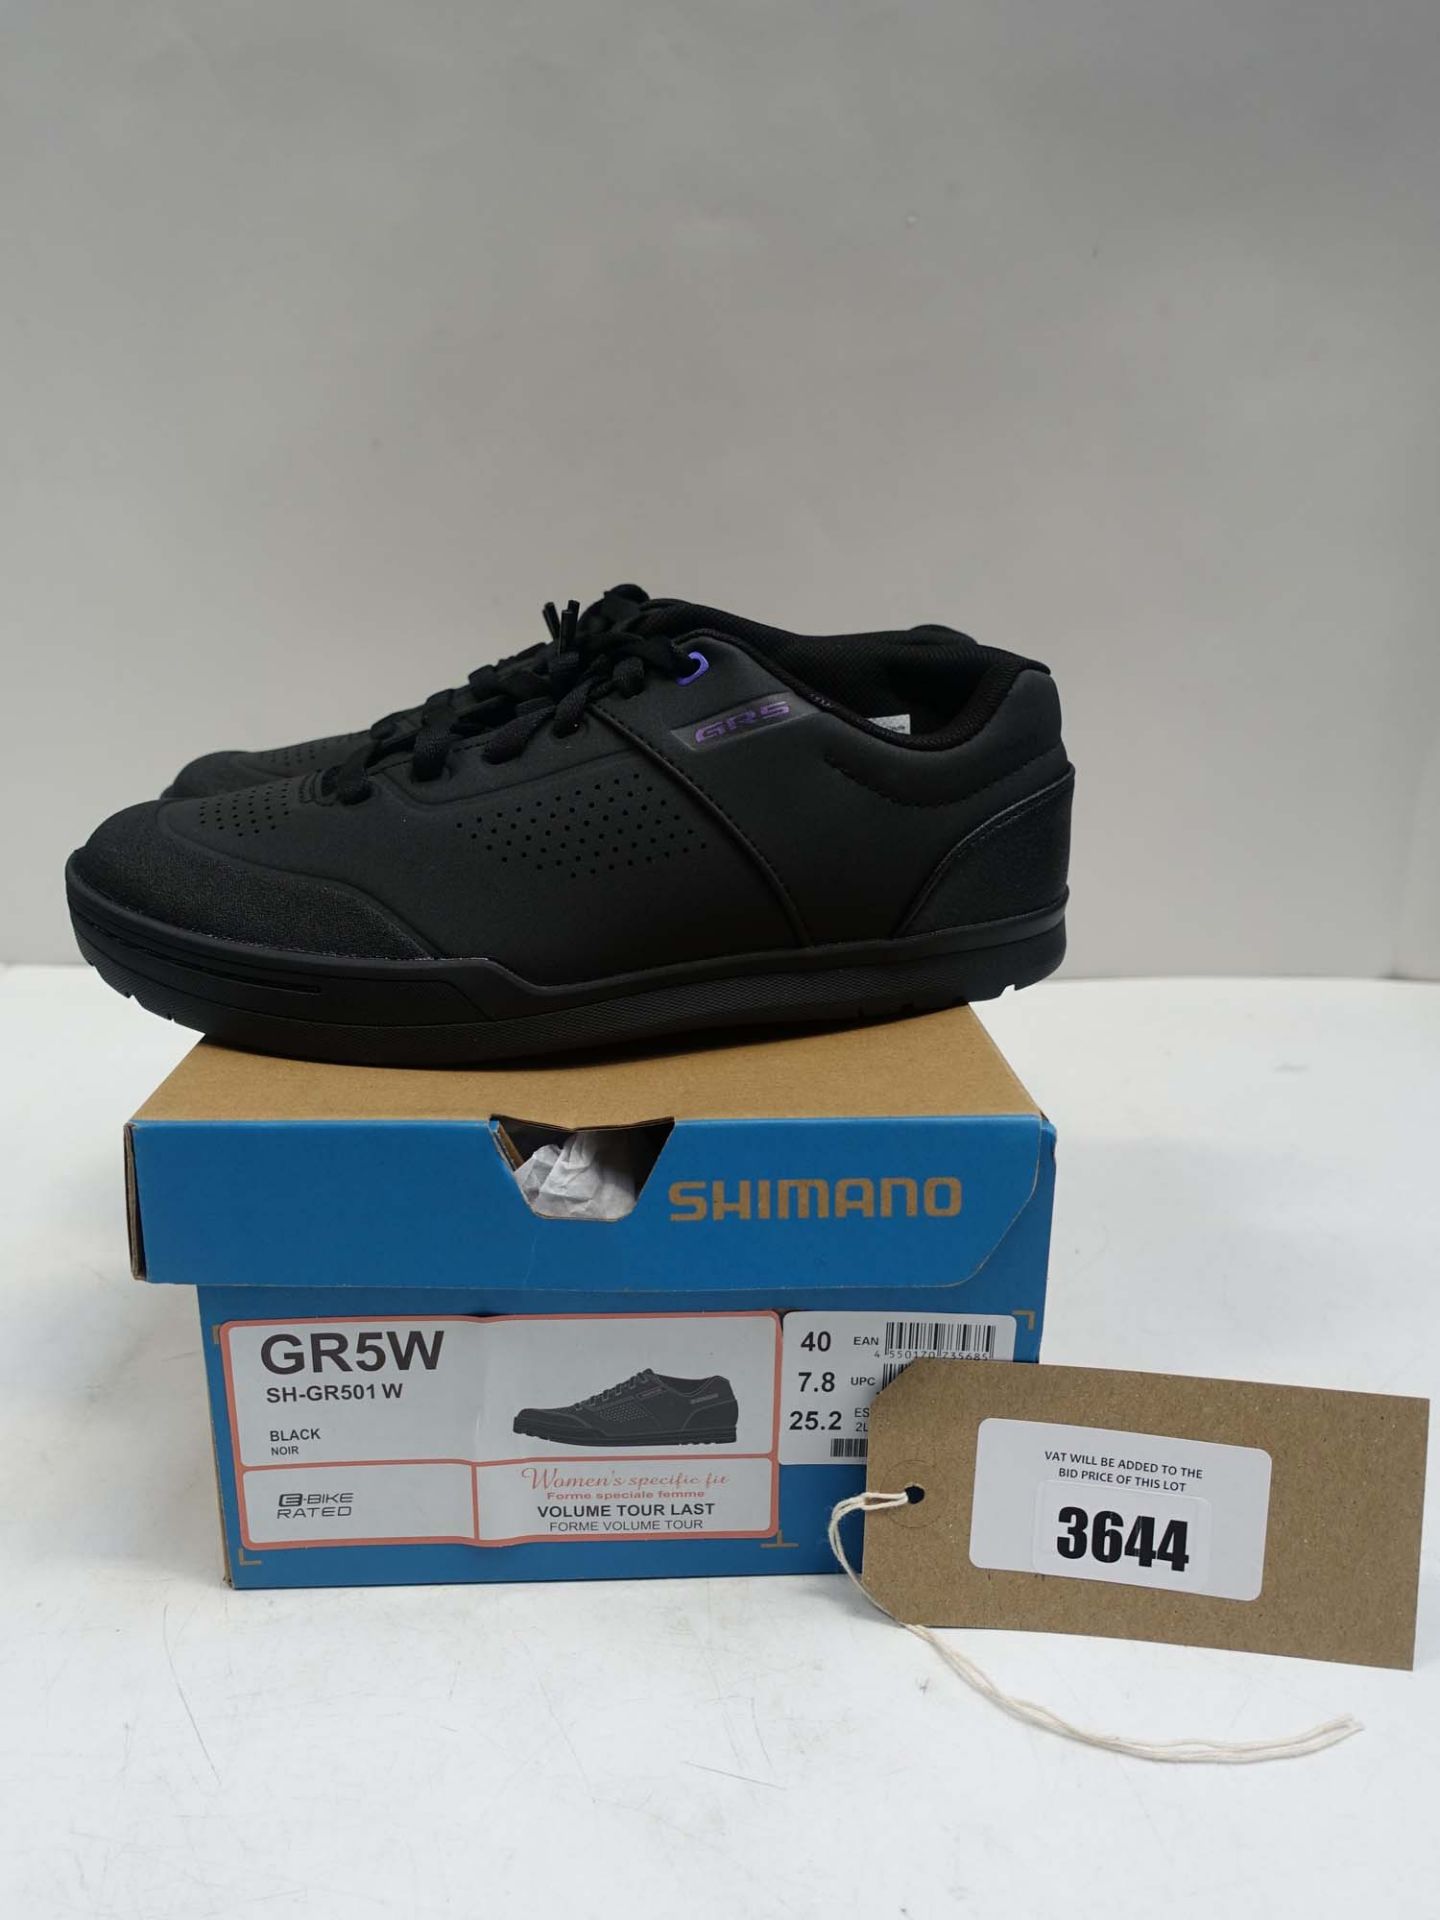 Shimano GR5W womens shoes size EU 40